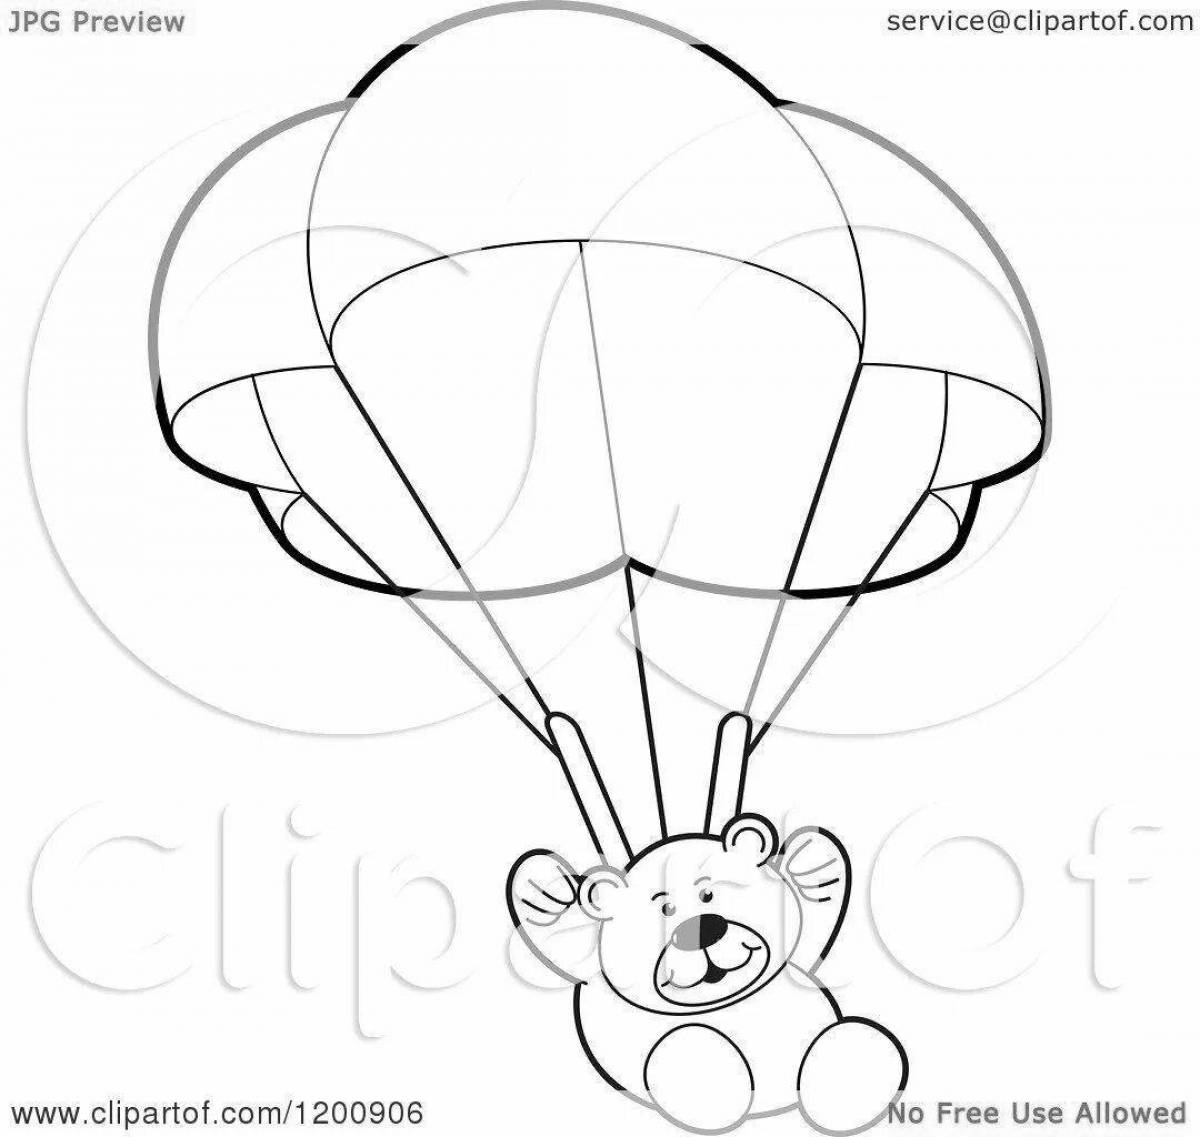 Увлекательная раскраска с парашютом для дошкольников